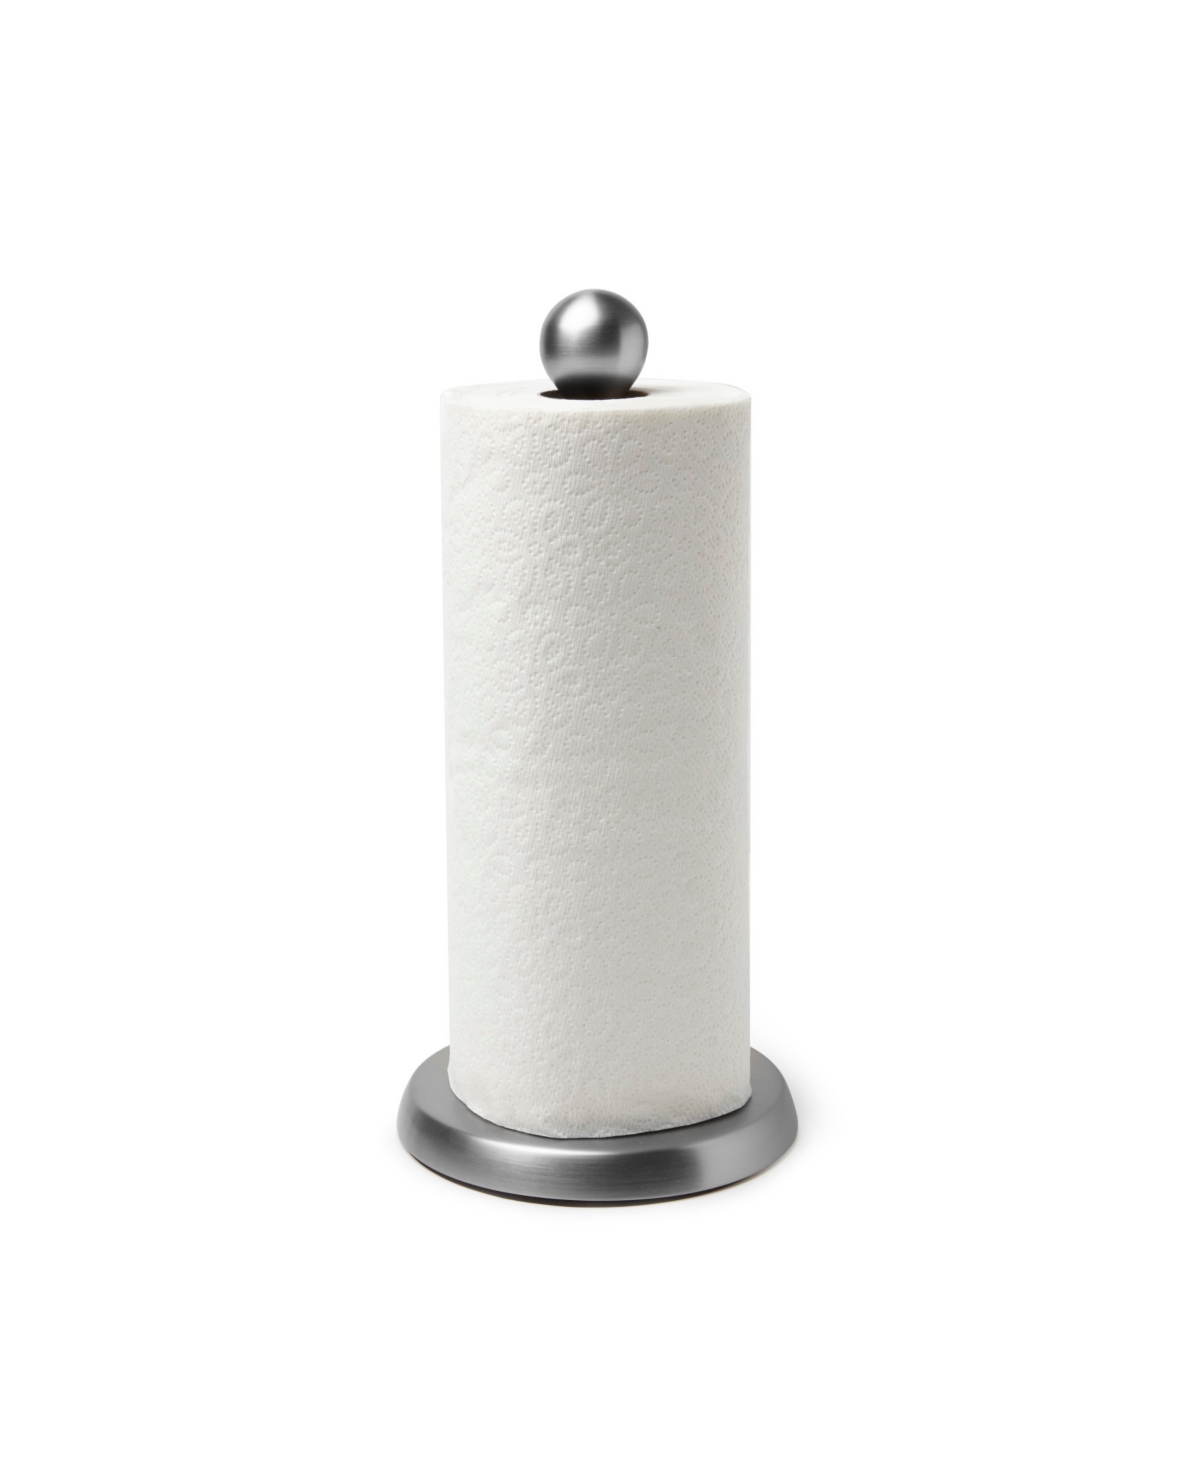 Umbra Teardrop Paper Towel Holder In Nickel